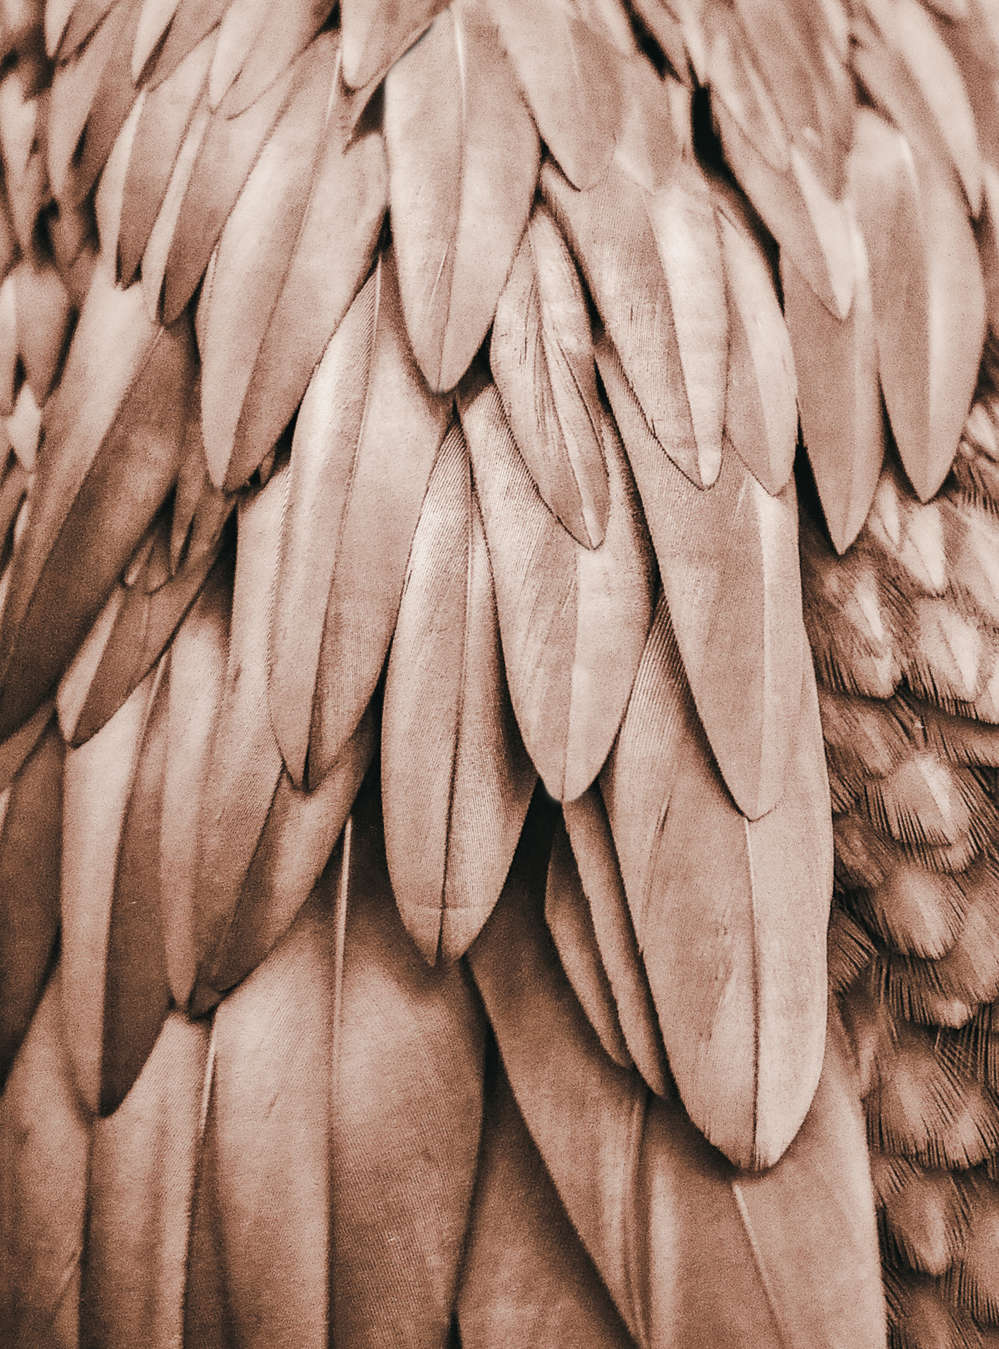             Fototapete Feder Flügel in Sepia Braun
        